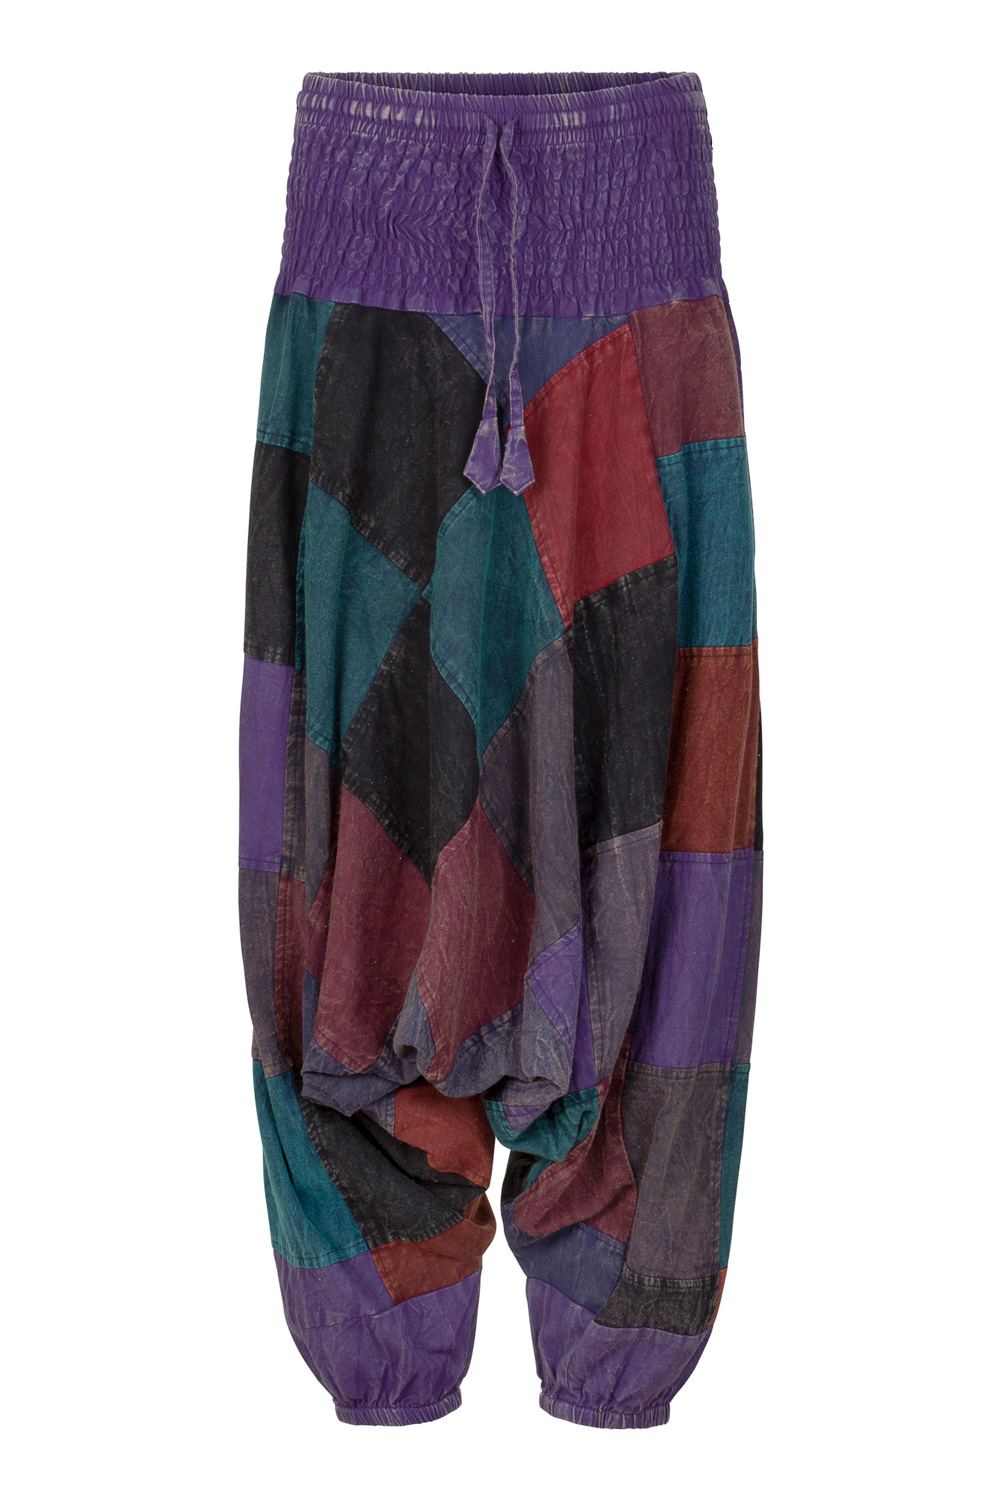 Hippie Boho Patchwork Trousers Gringo Size XL 14 16 | eBay